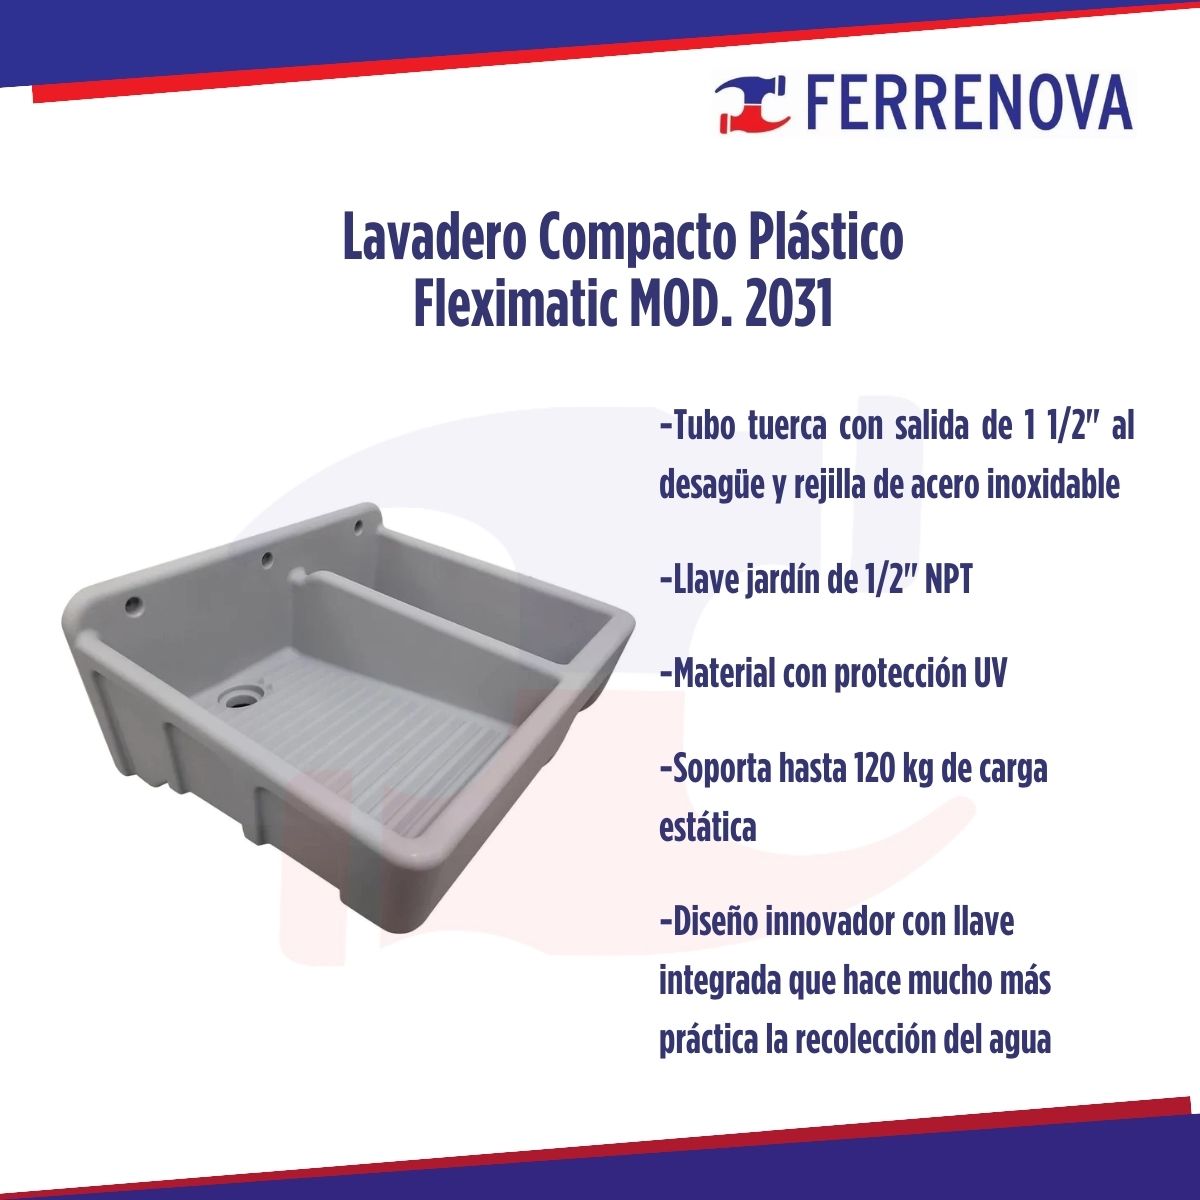 Lavadero Compacto Plástico Fleximatic Mod. 2031